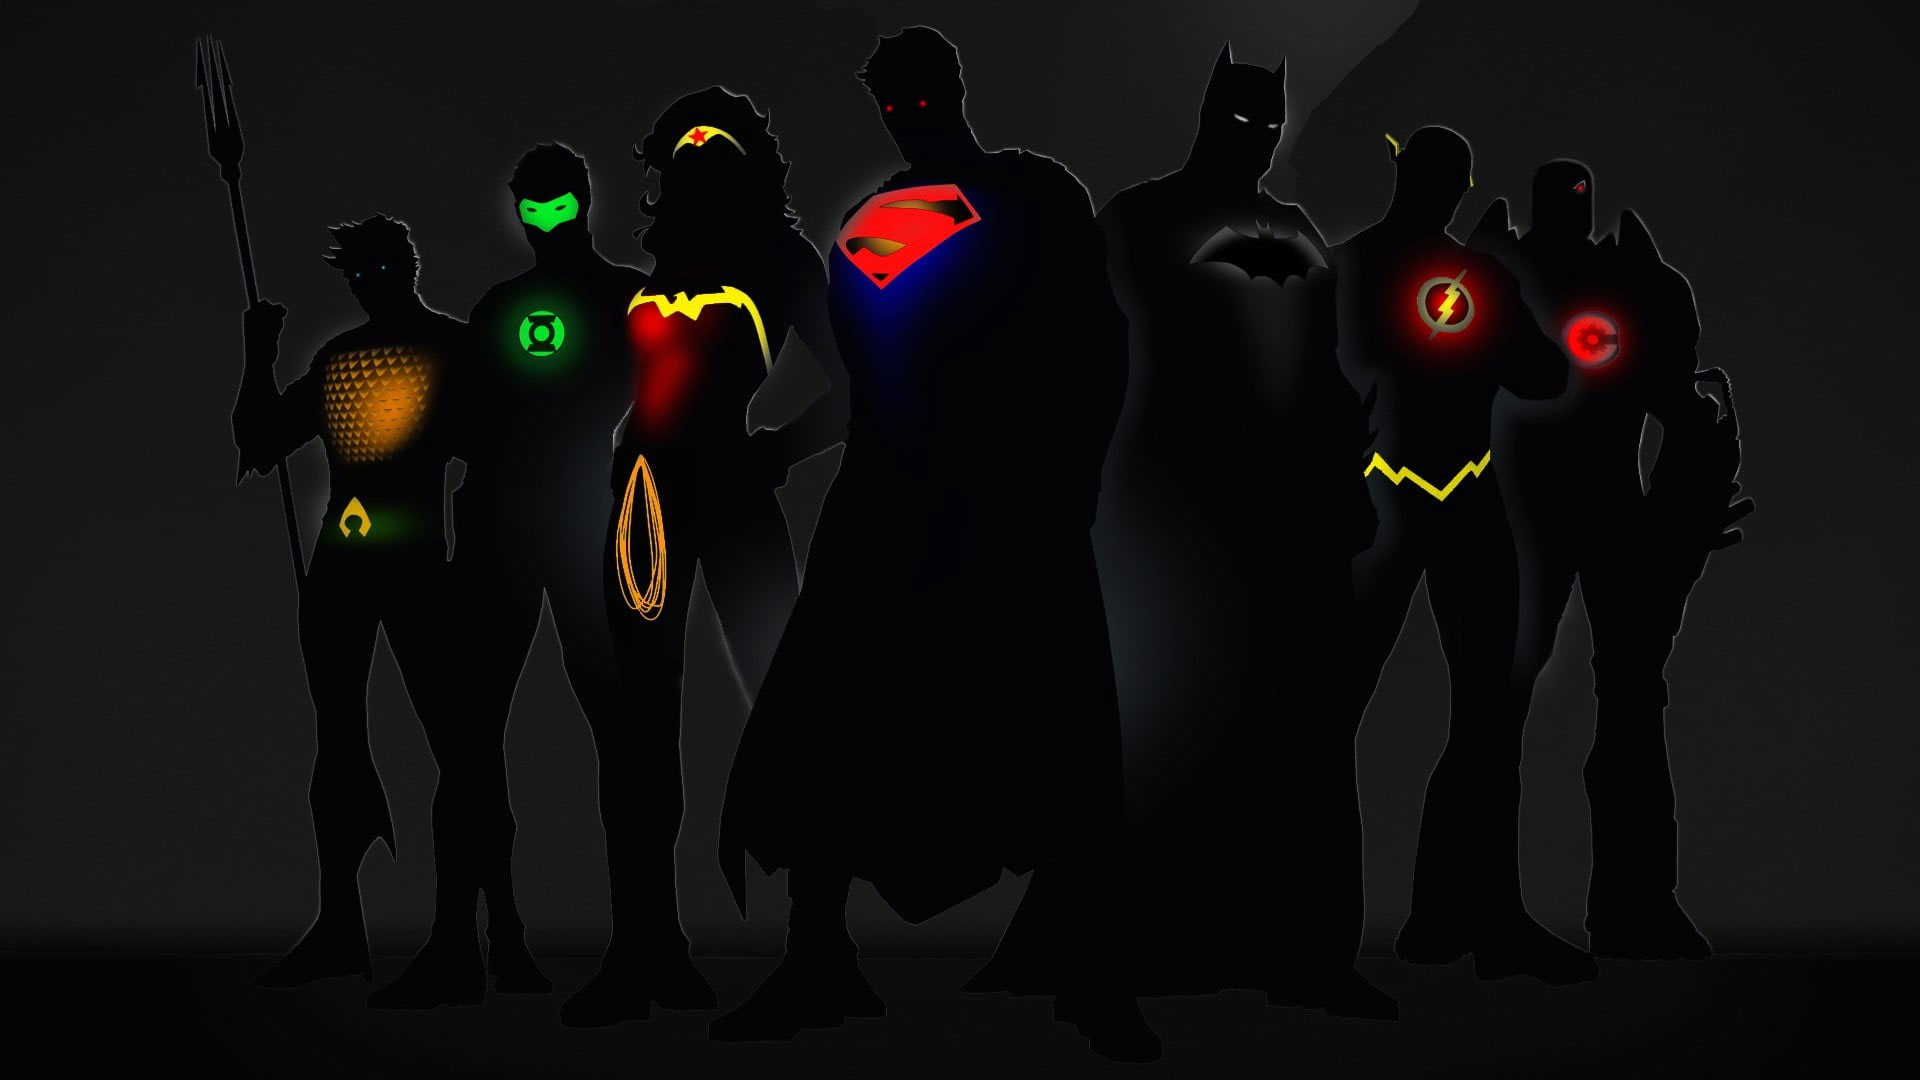 Justice League wallpaper, Justice League, Superman, Batman, Wonder Woman